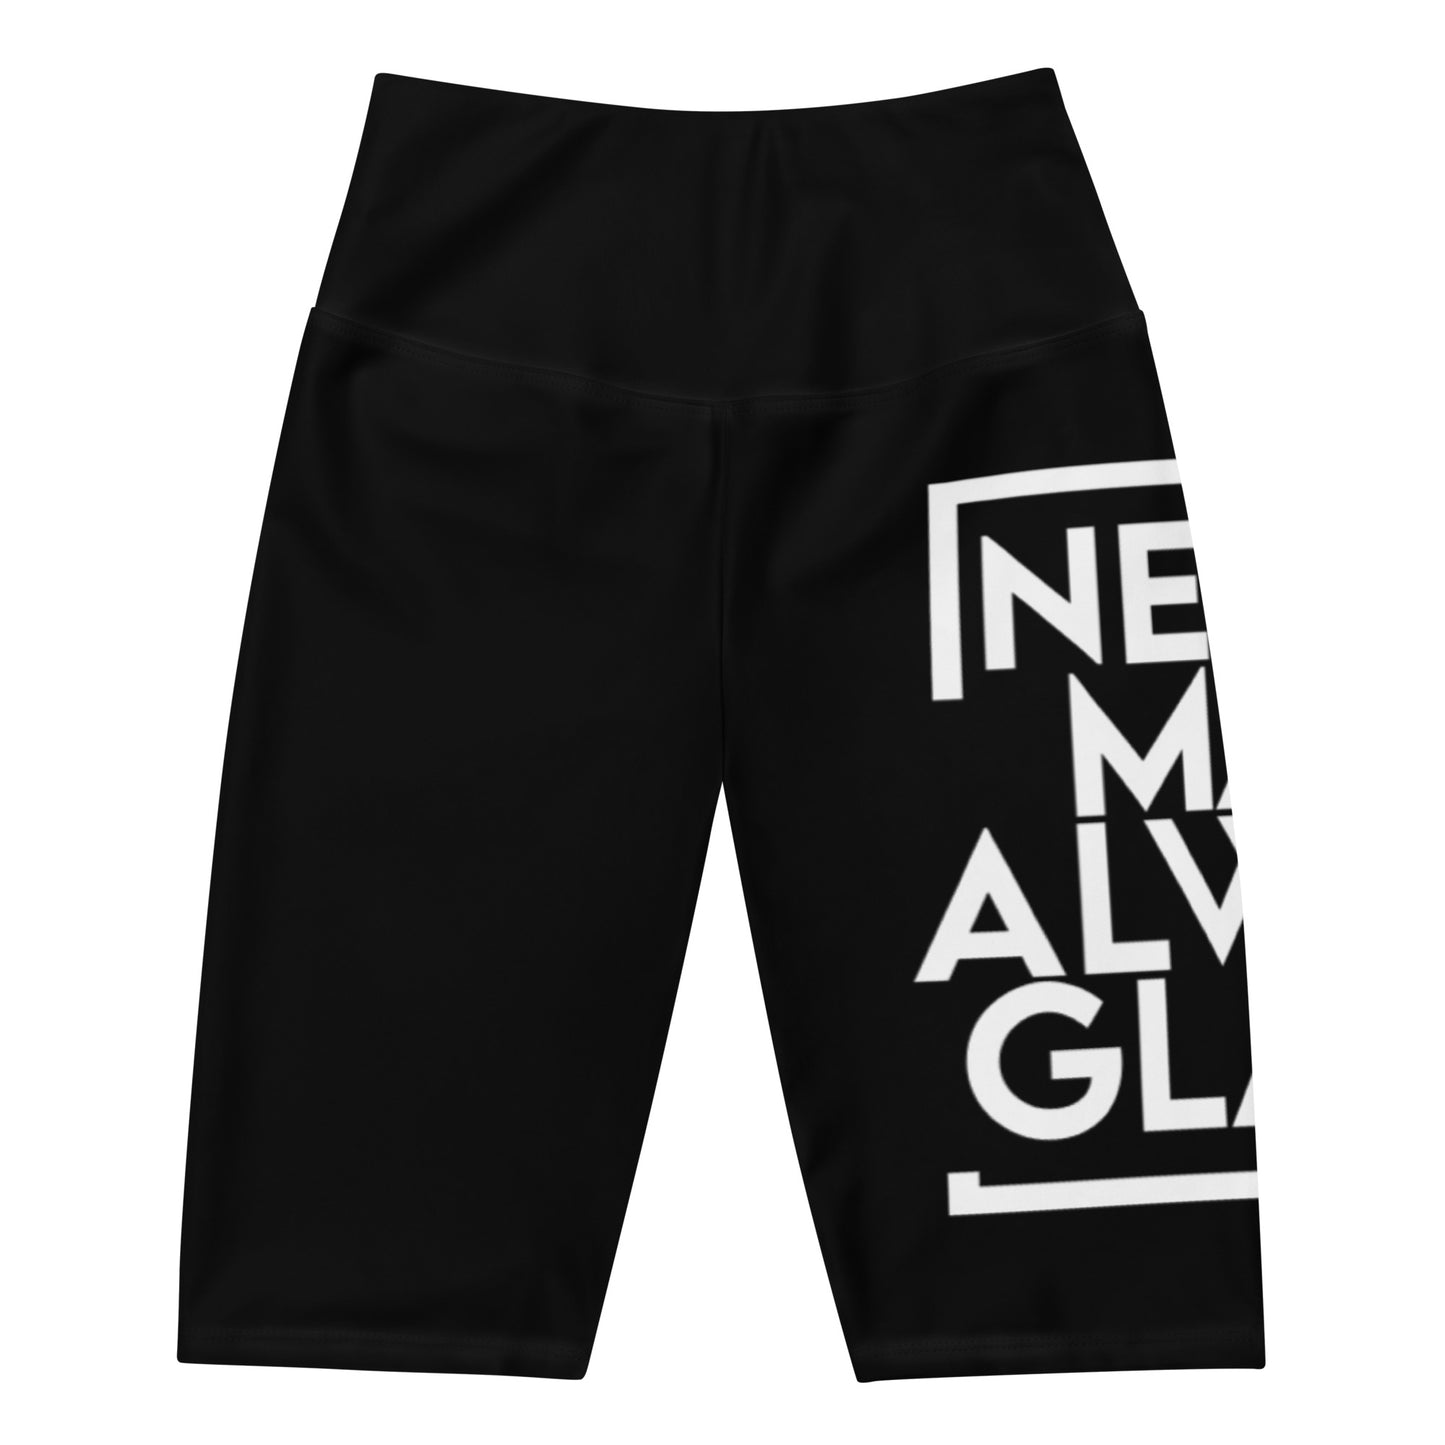 NMAG Biker Shorts